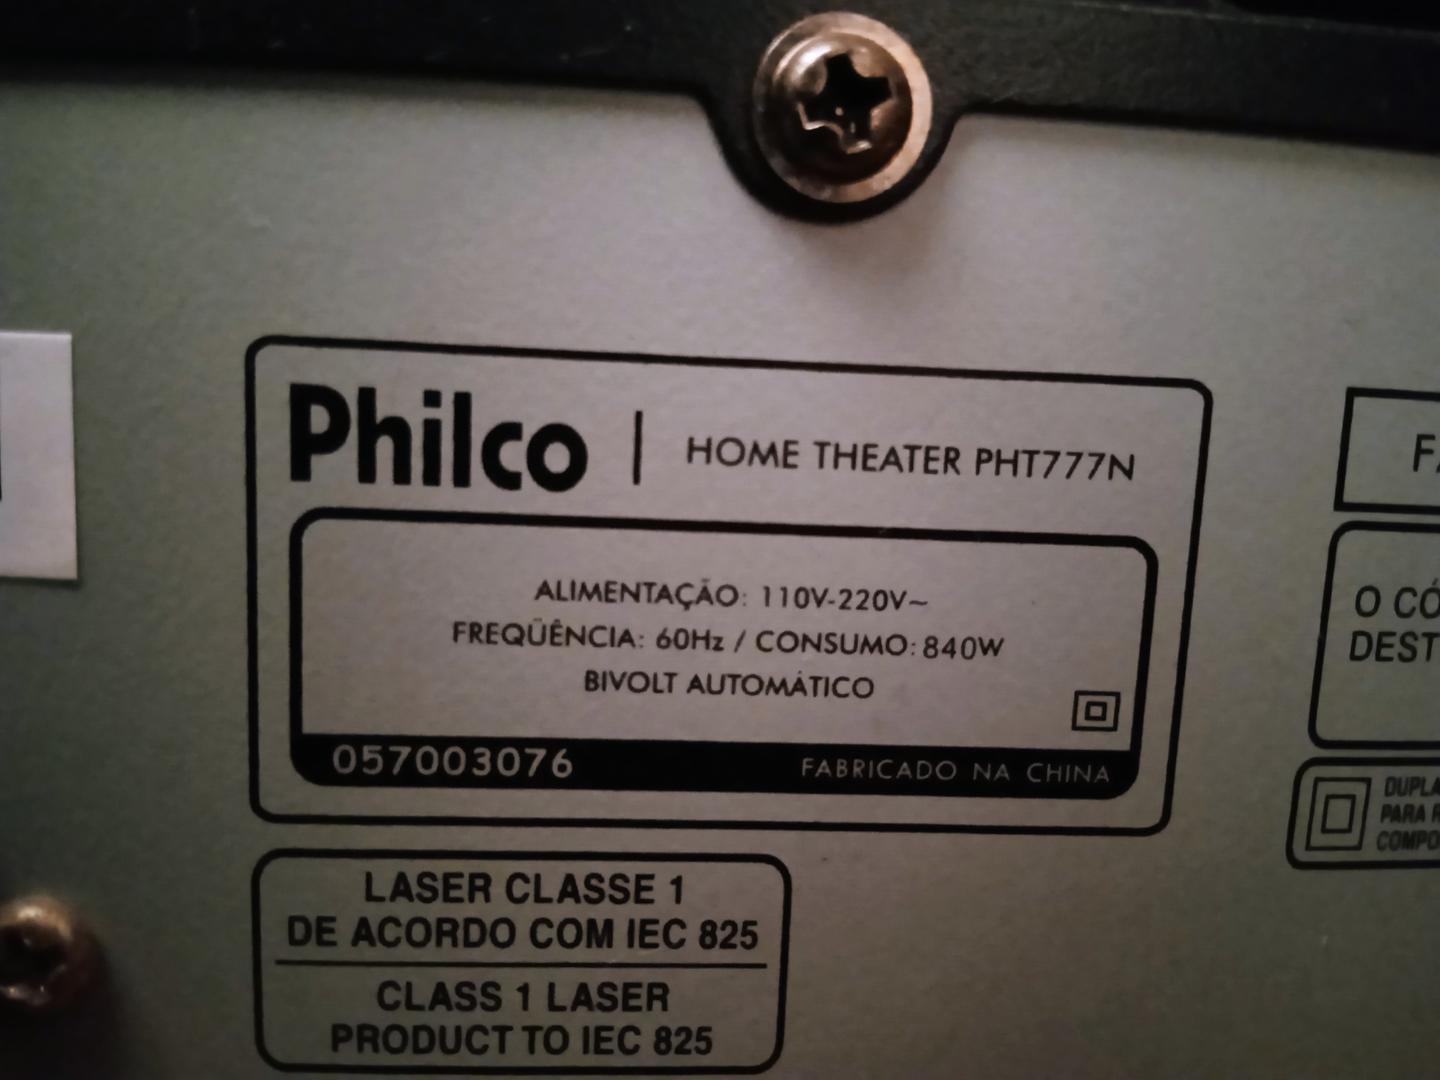 Home theater Philco PHT777N Preto